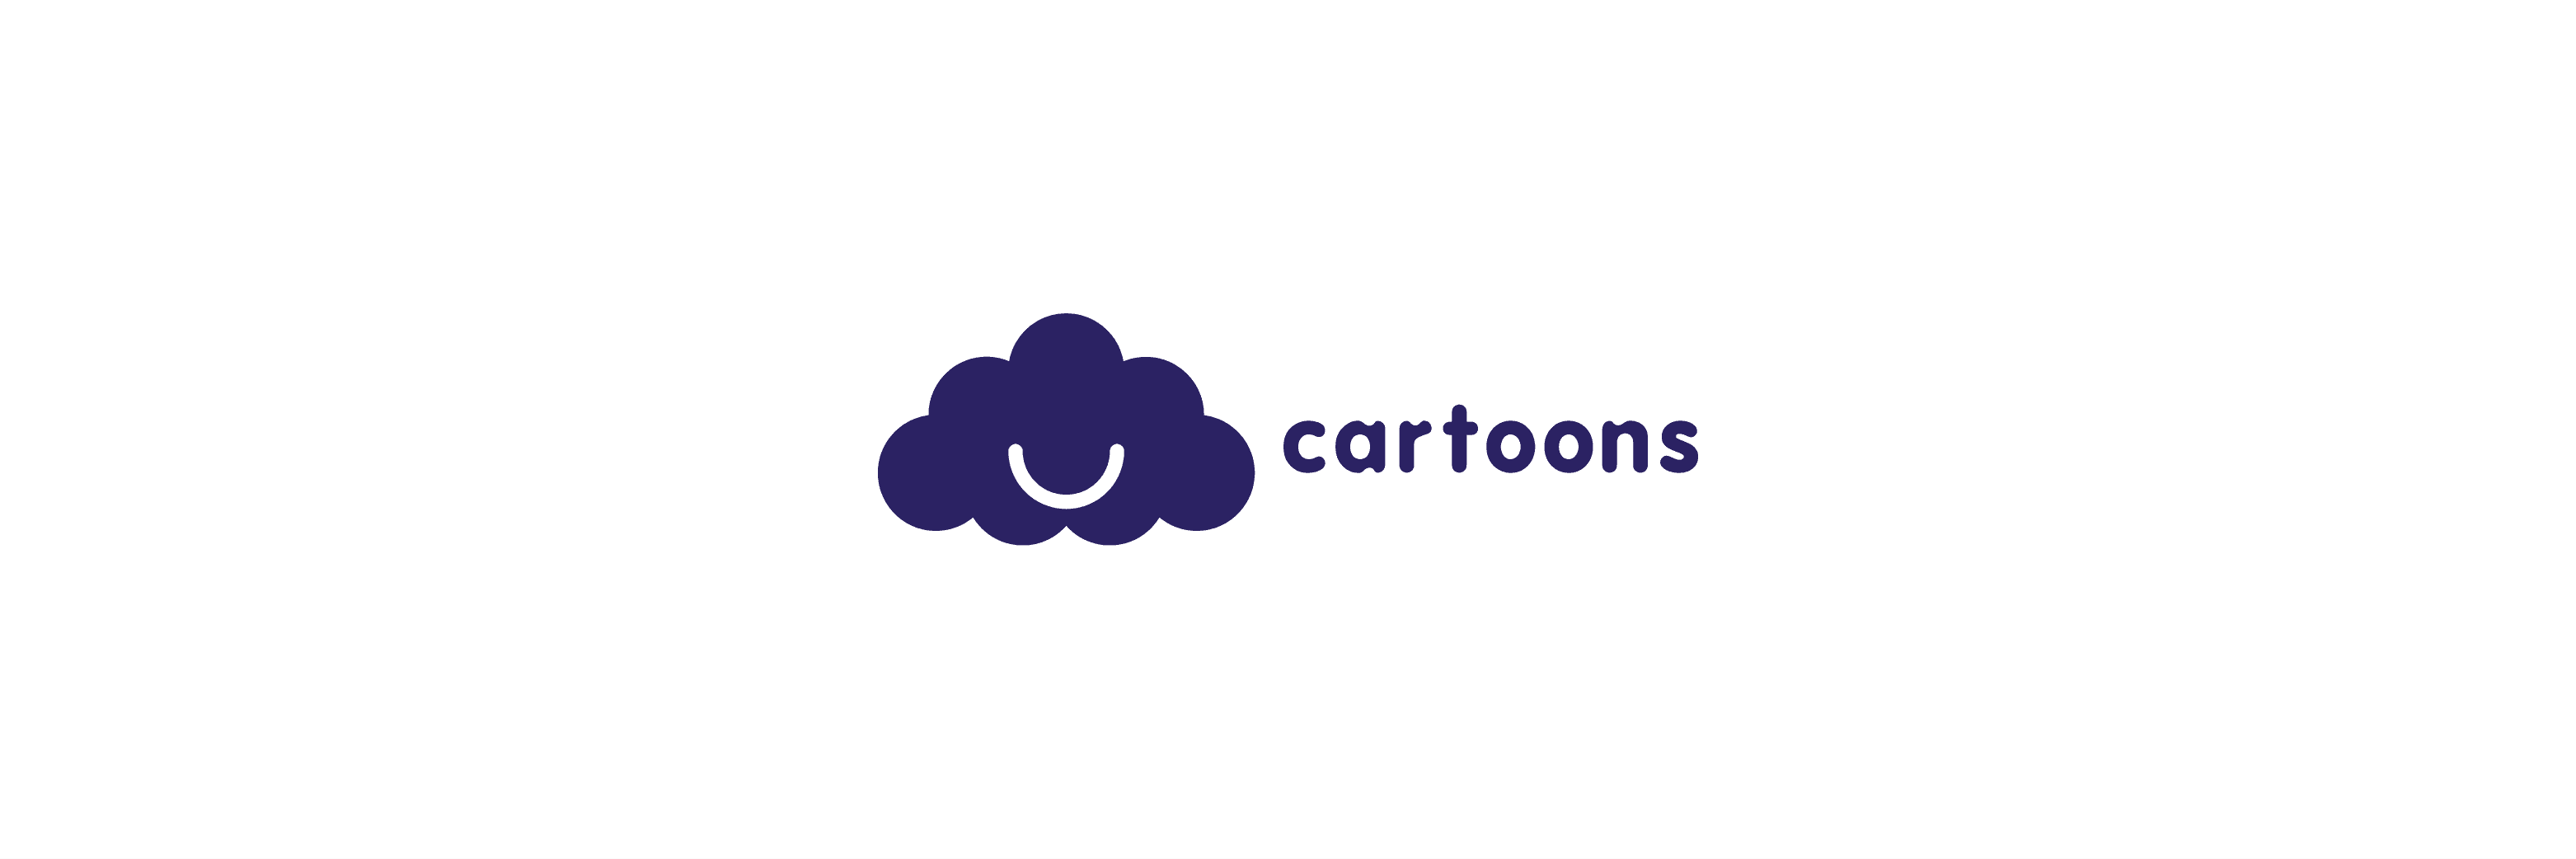 cartoons banner